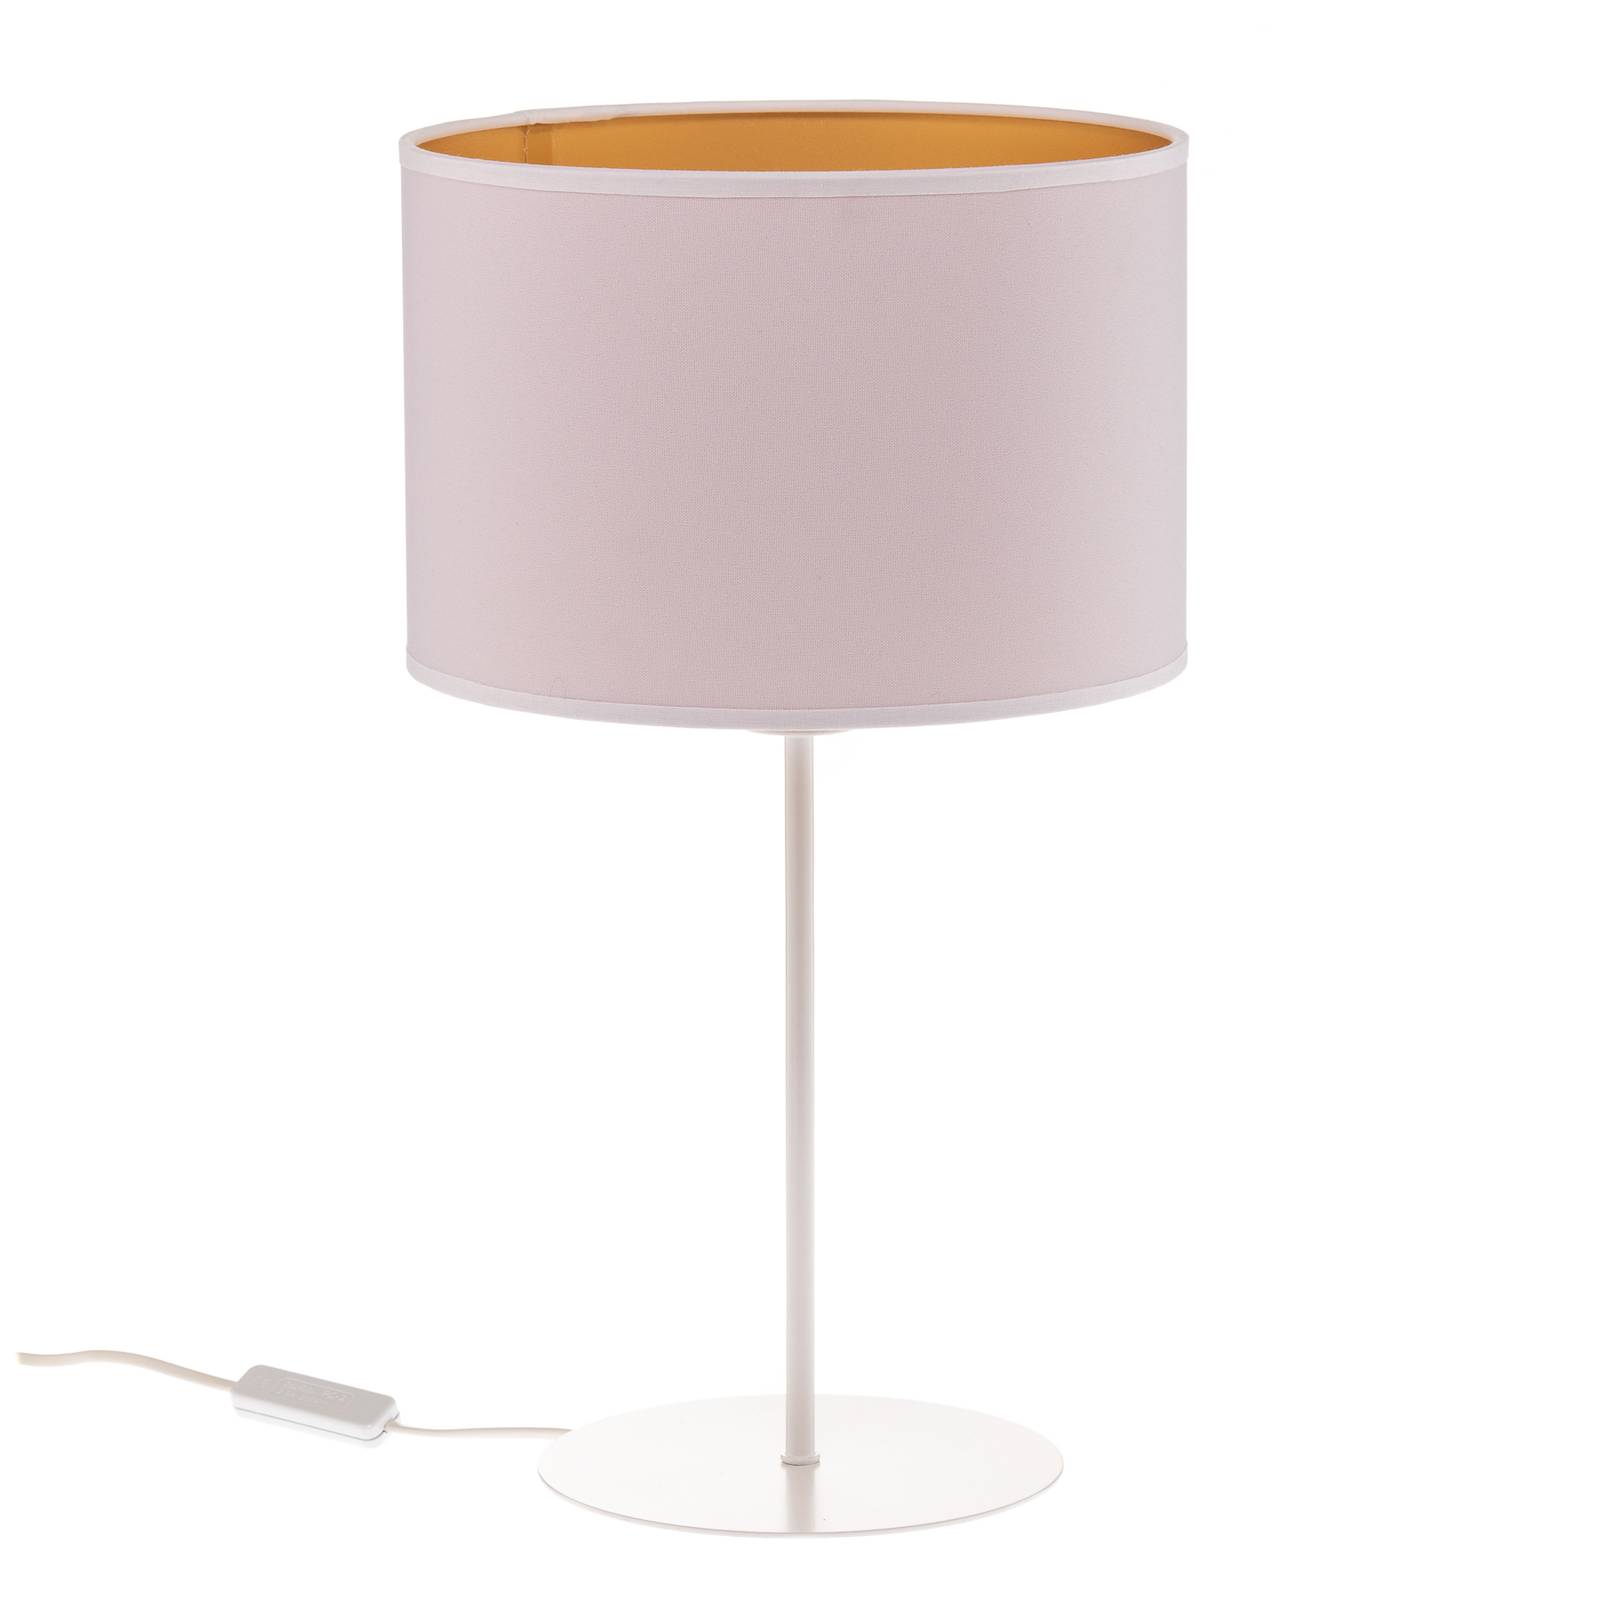 Roller asztali lámpa, fehér/arany, 50 cm magas